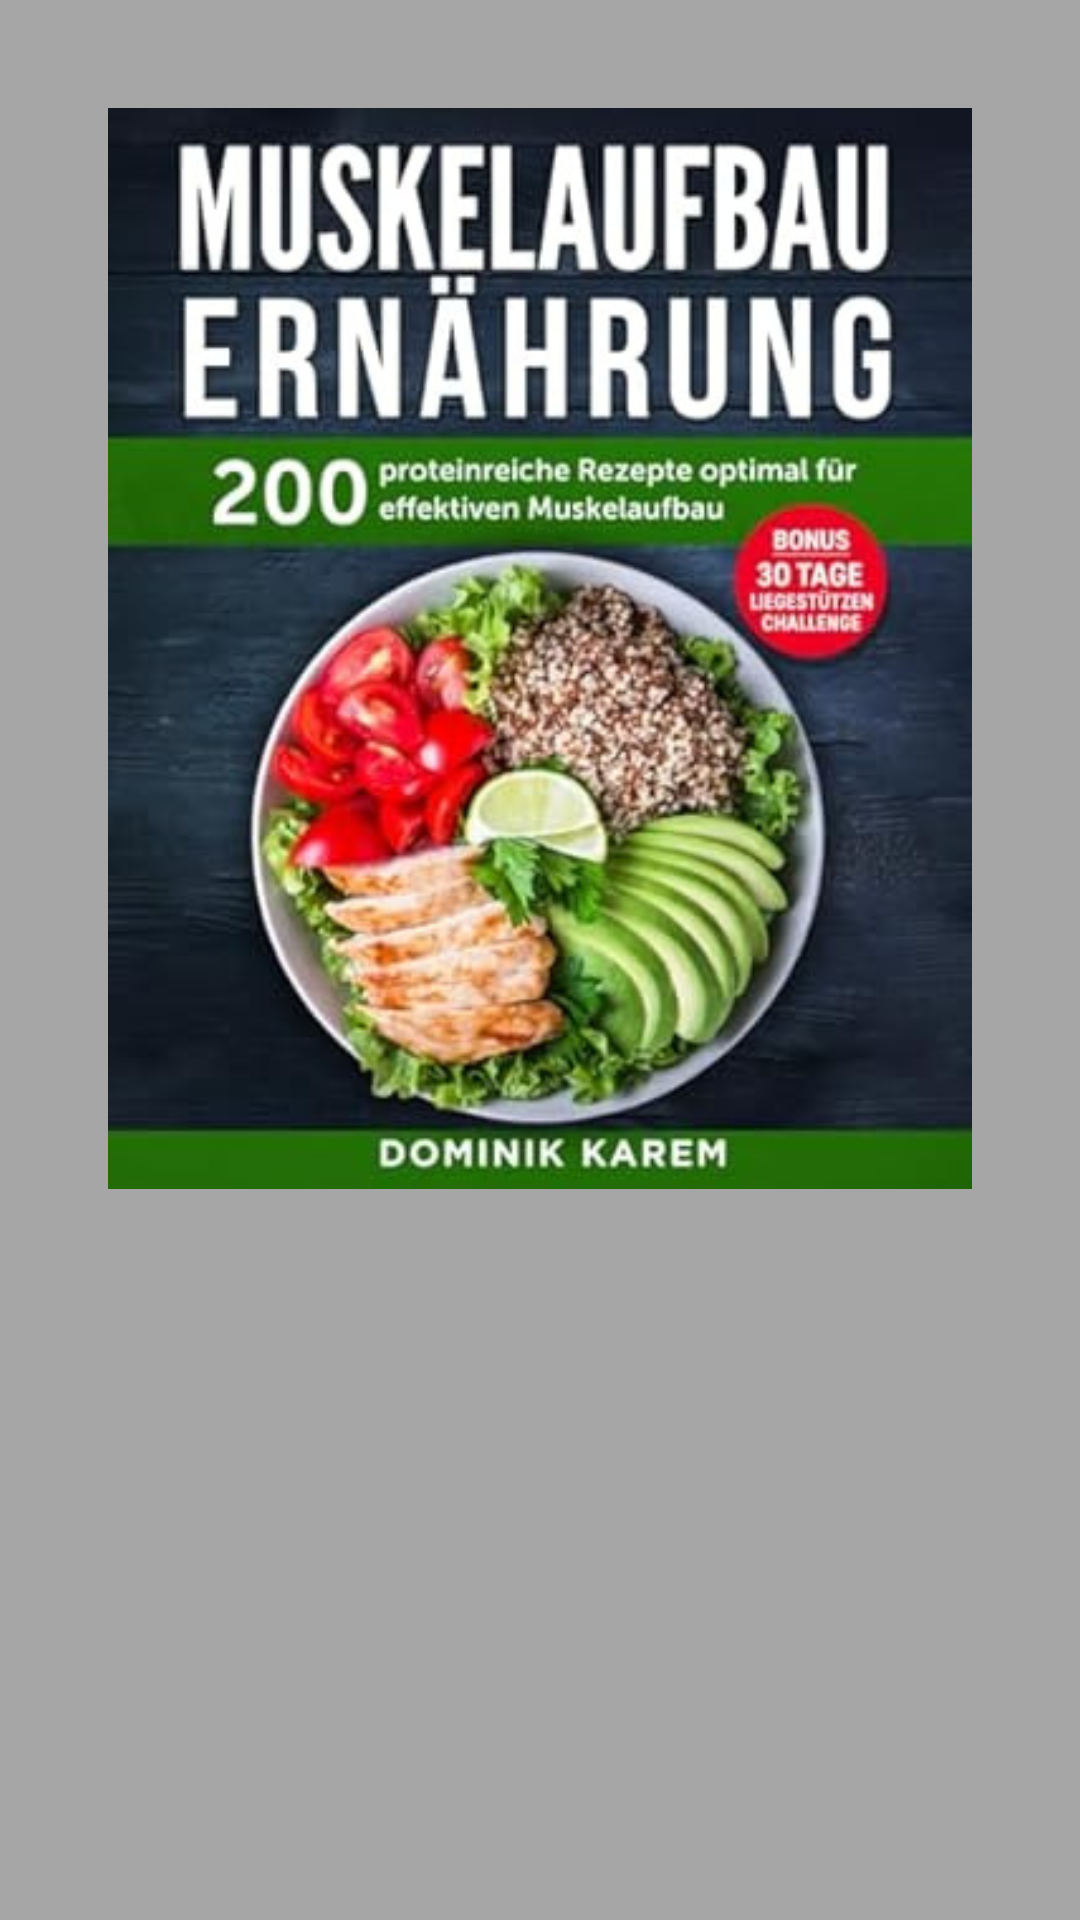 Muskelaufbau Ernährung: 200 proteinreiche Rezepte optimal für effektiven Muskelaufbau. Bonus: 30 Tage Liegestütz Challenge